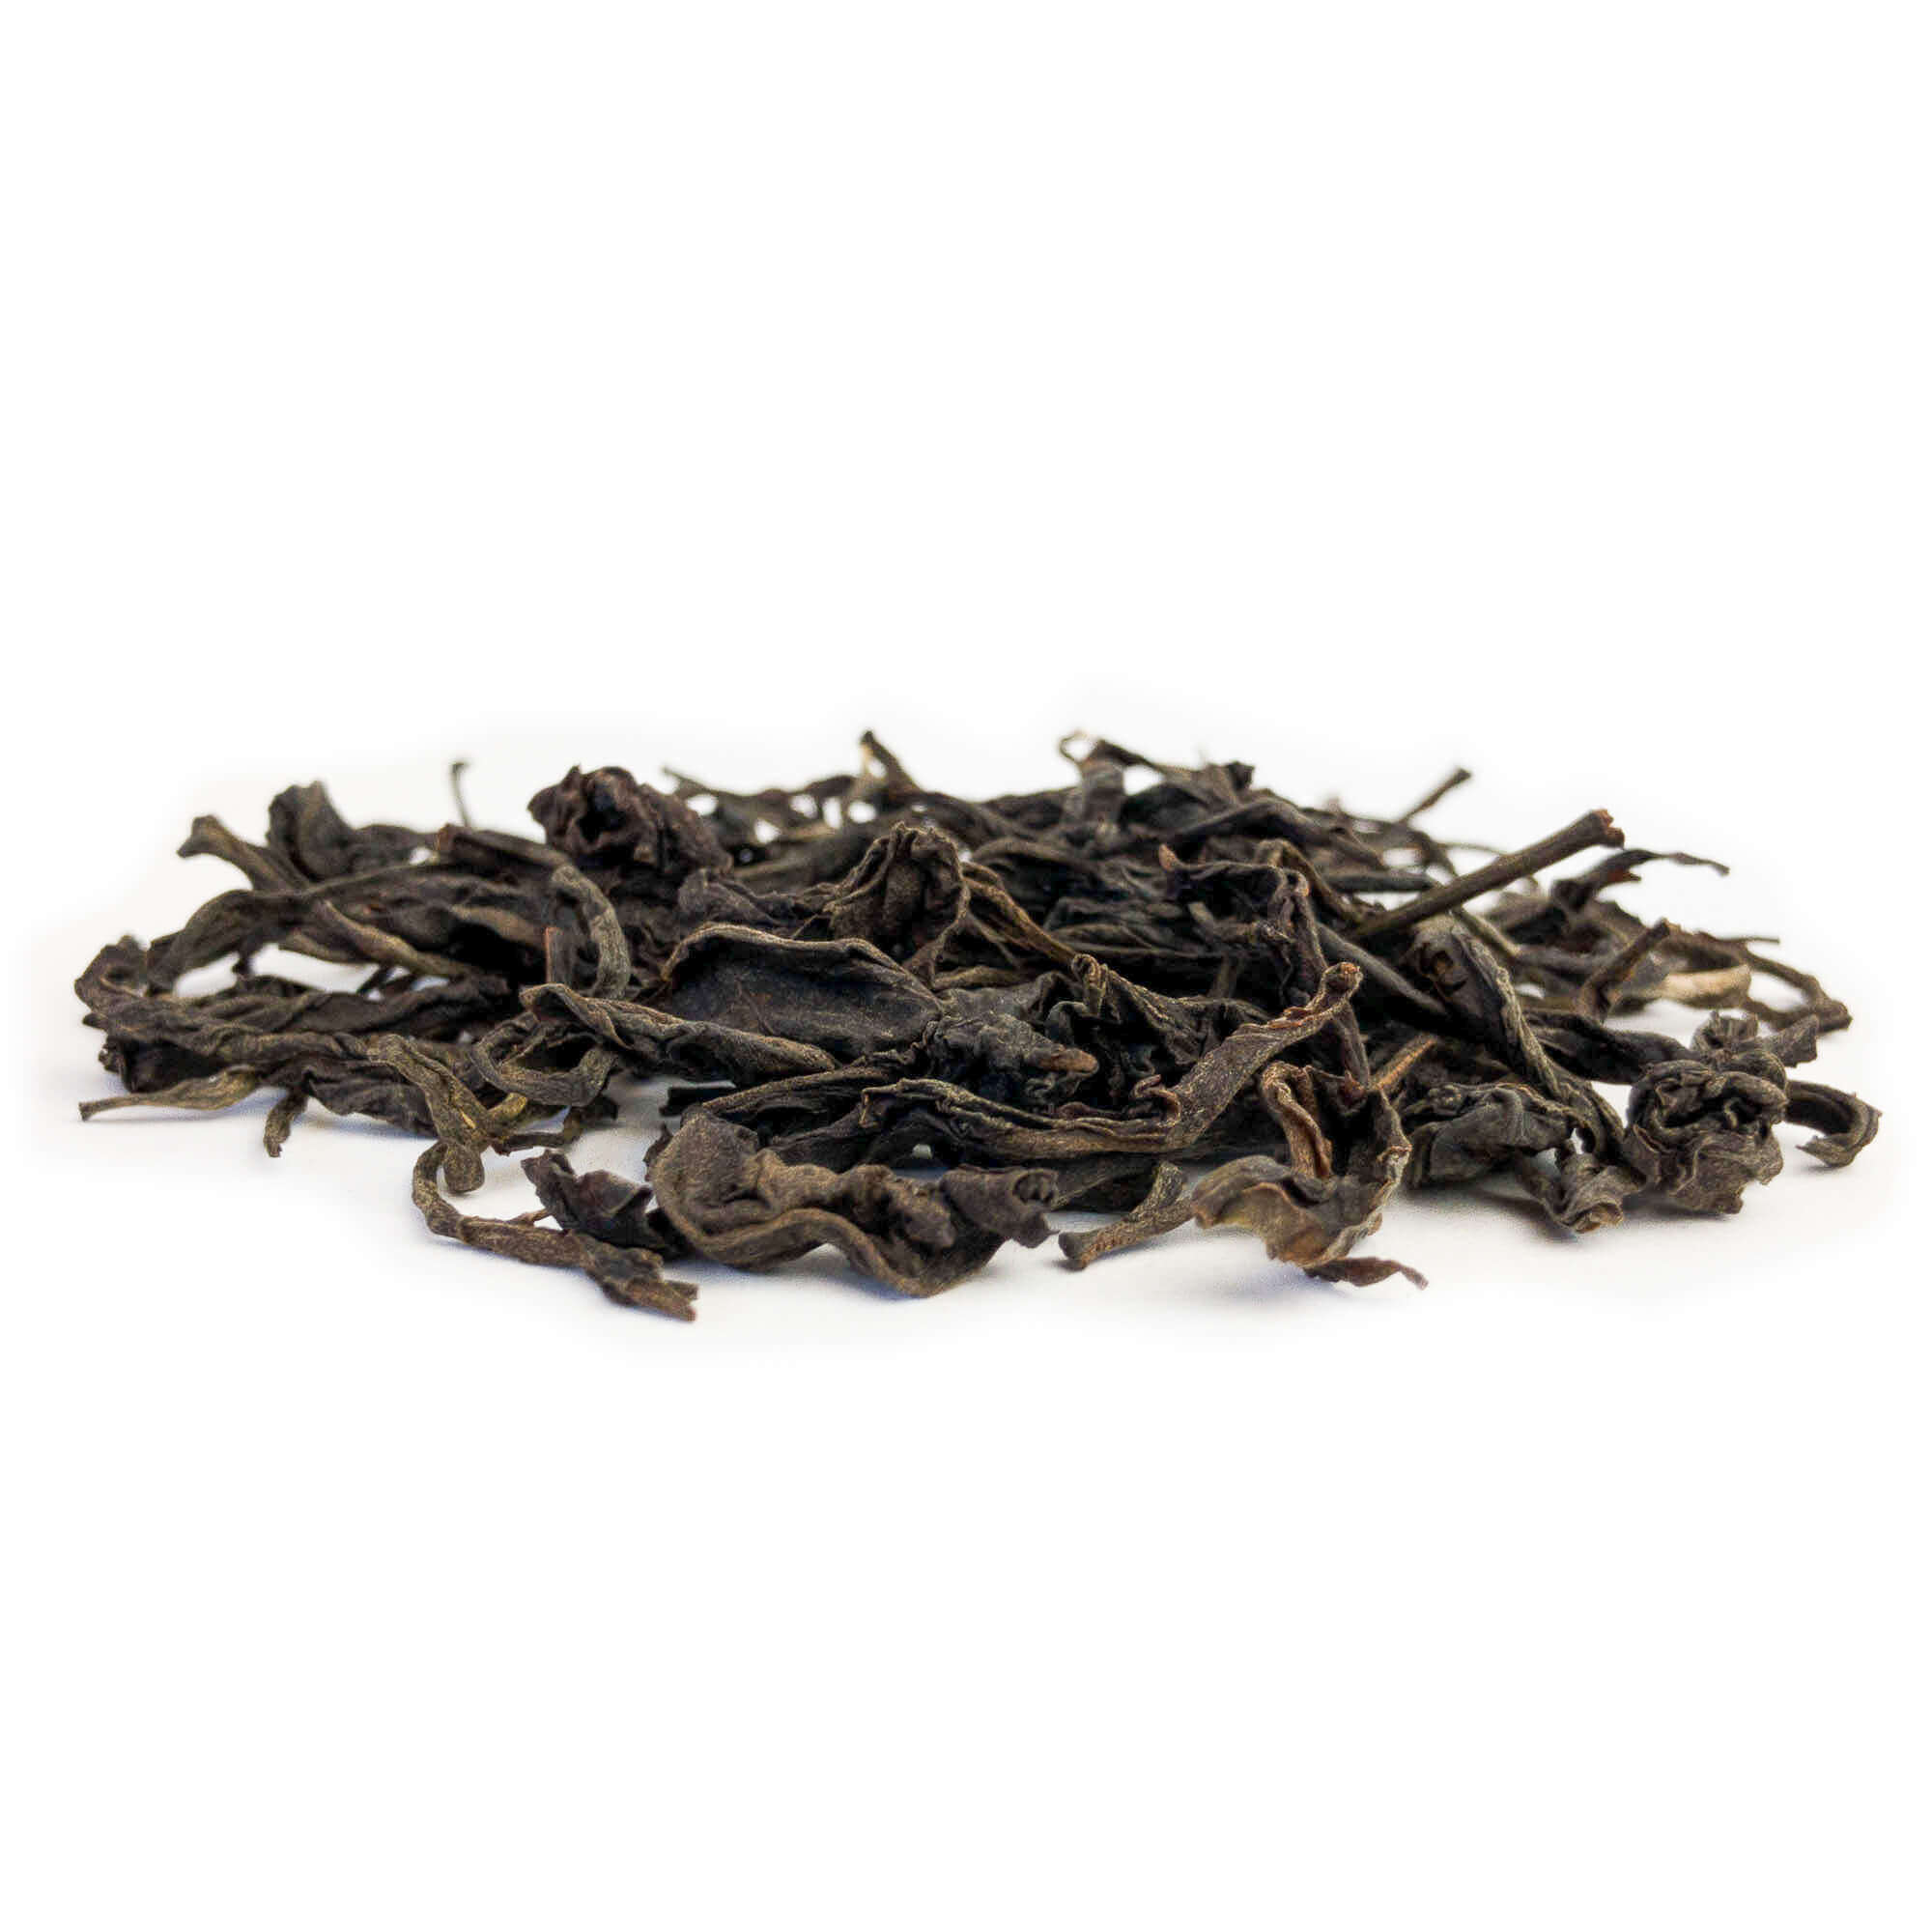 Prithivi Assam - Black Tea from India